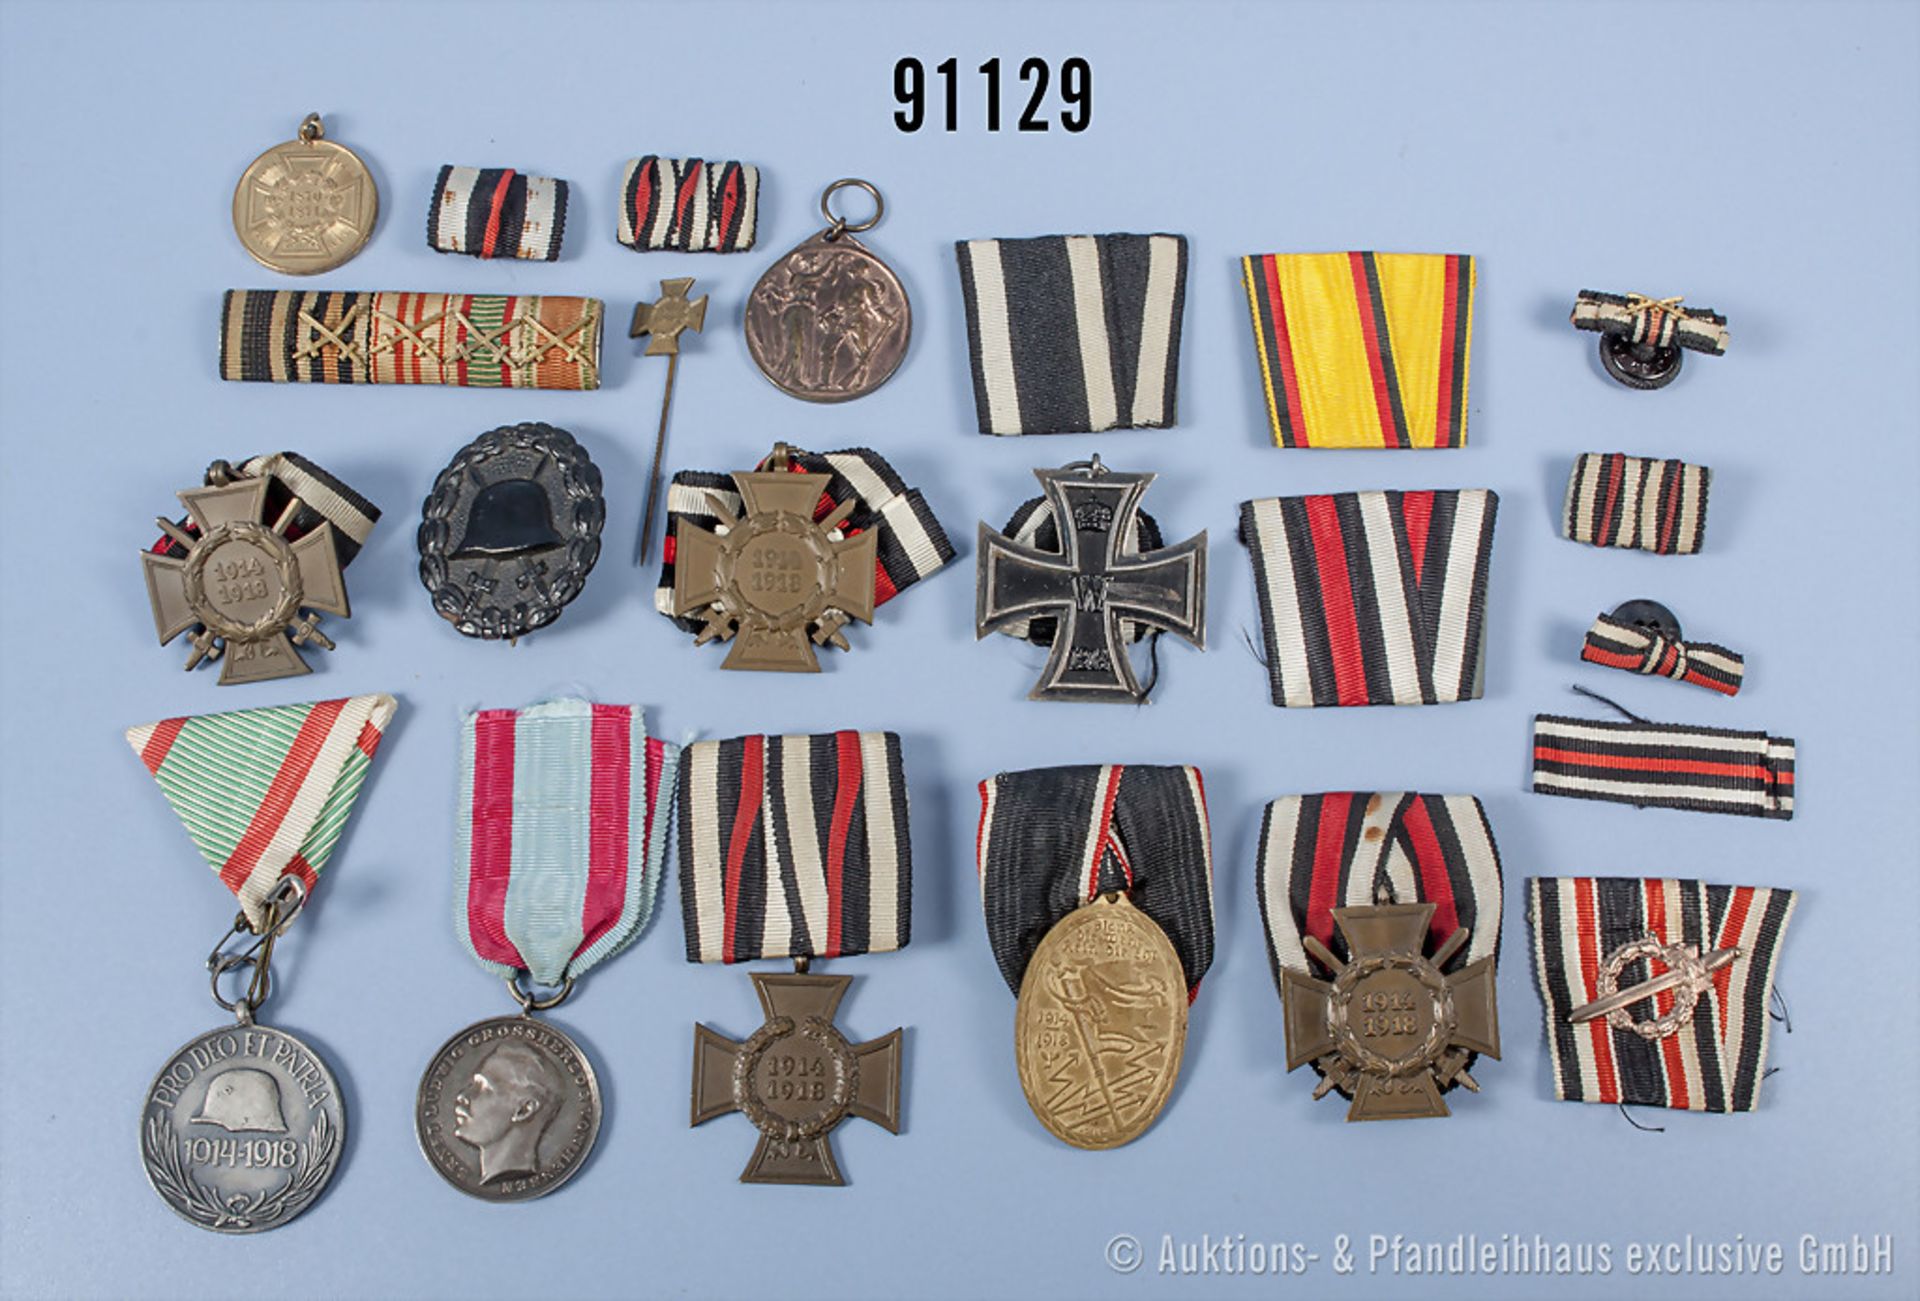 Konvolut EK2 1914, 3 EKF, EKT mit dazugehöriger Miniatur, Kyffhäusermedaille, Ehrenmünze ...